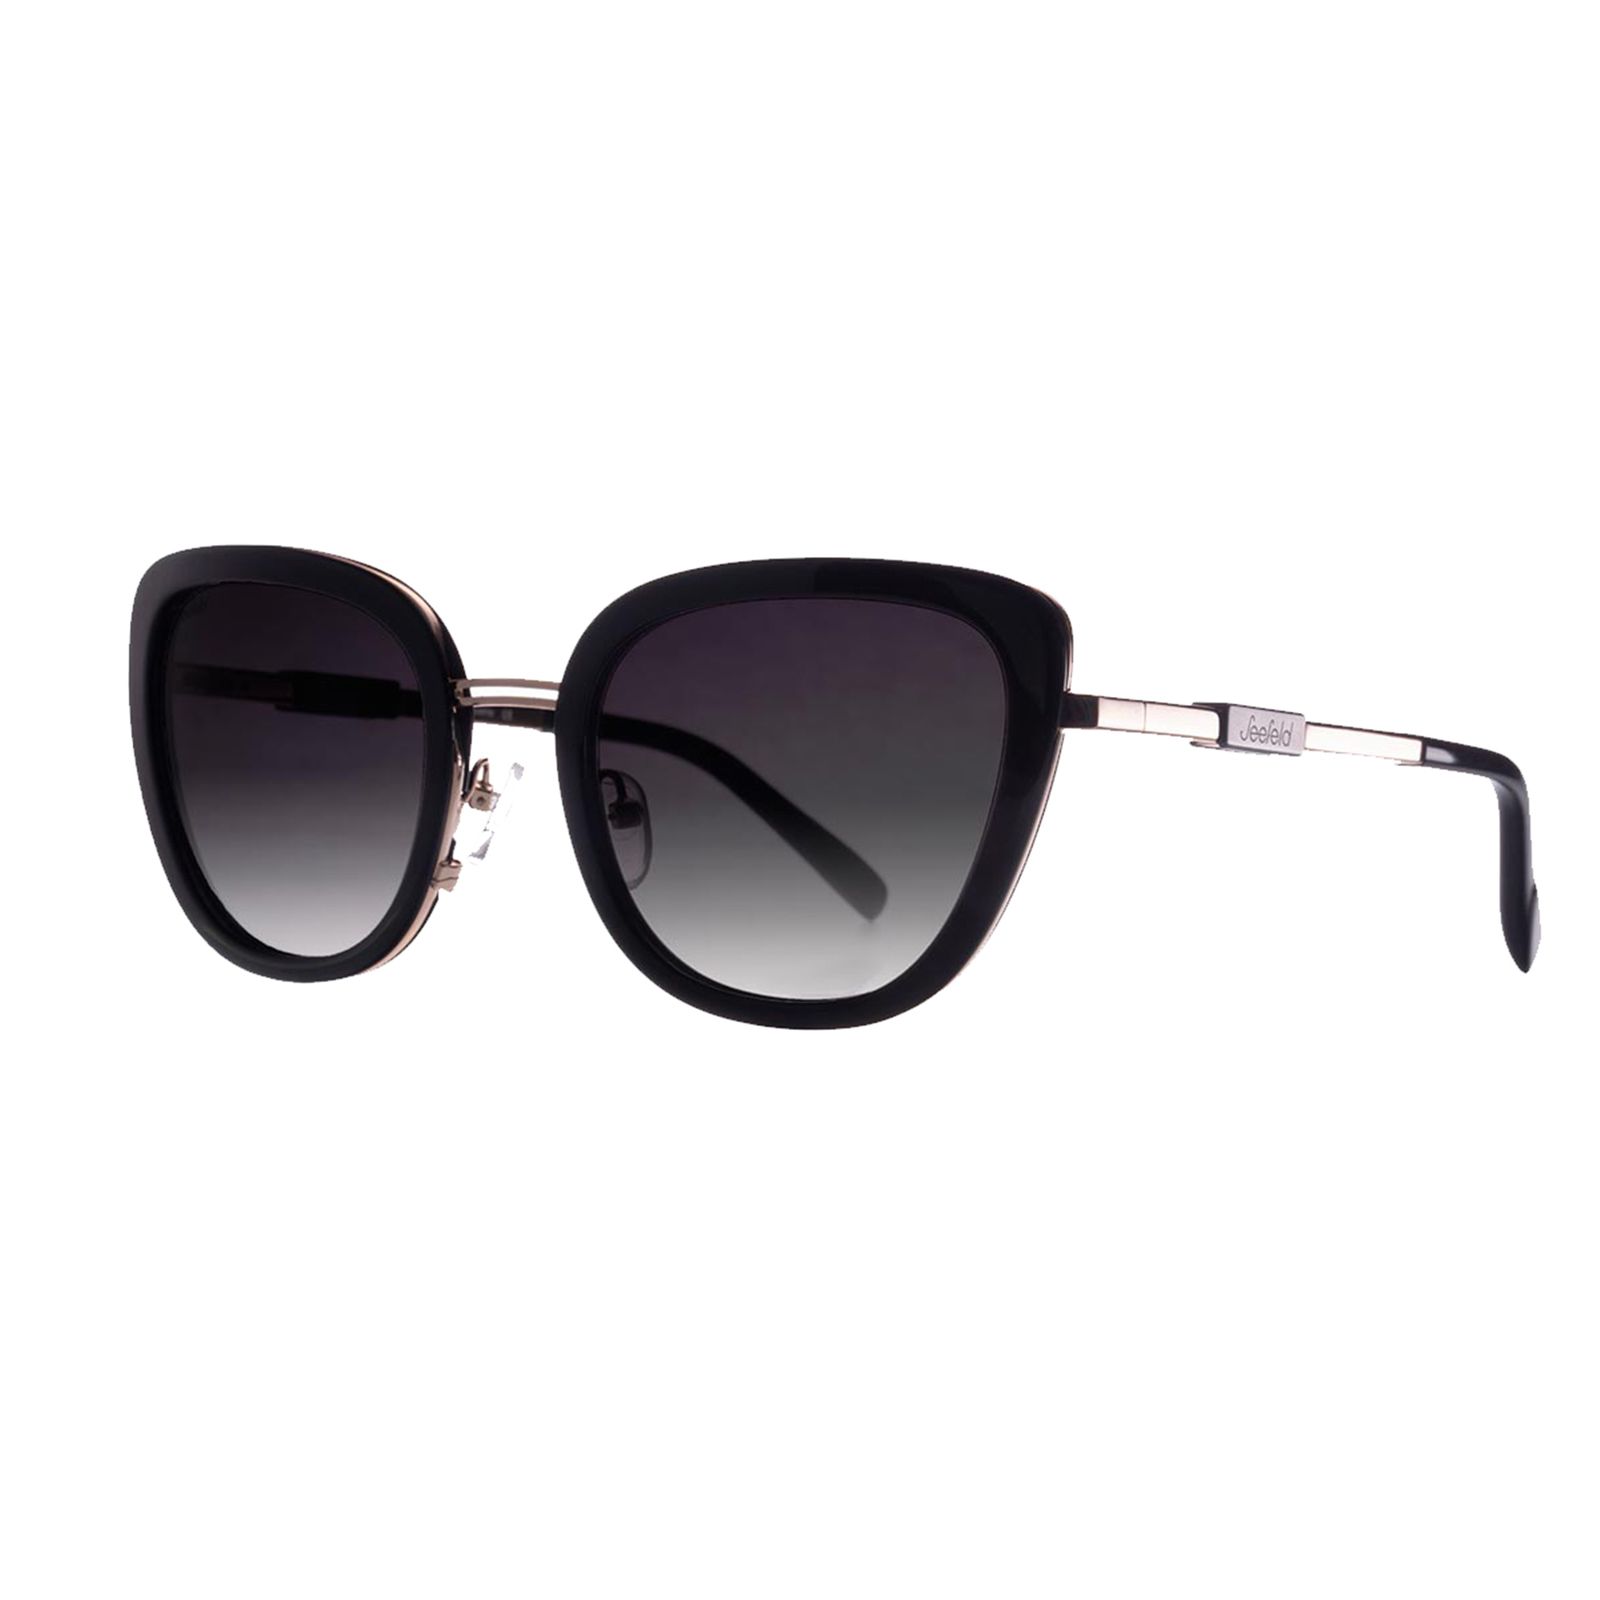 عینک آفتابی زنانه سیفلد مدل هافبورگ C4 -  - 2